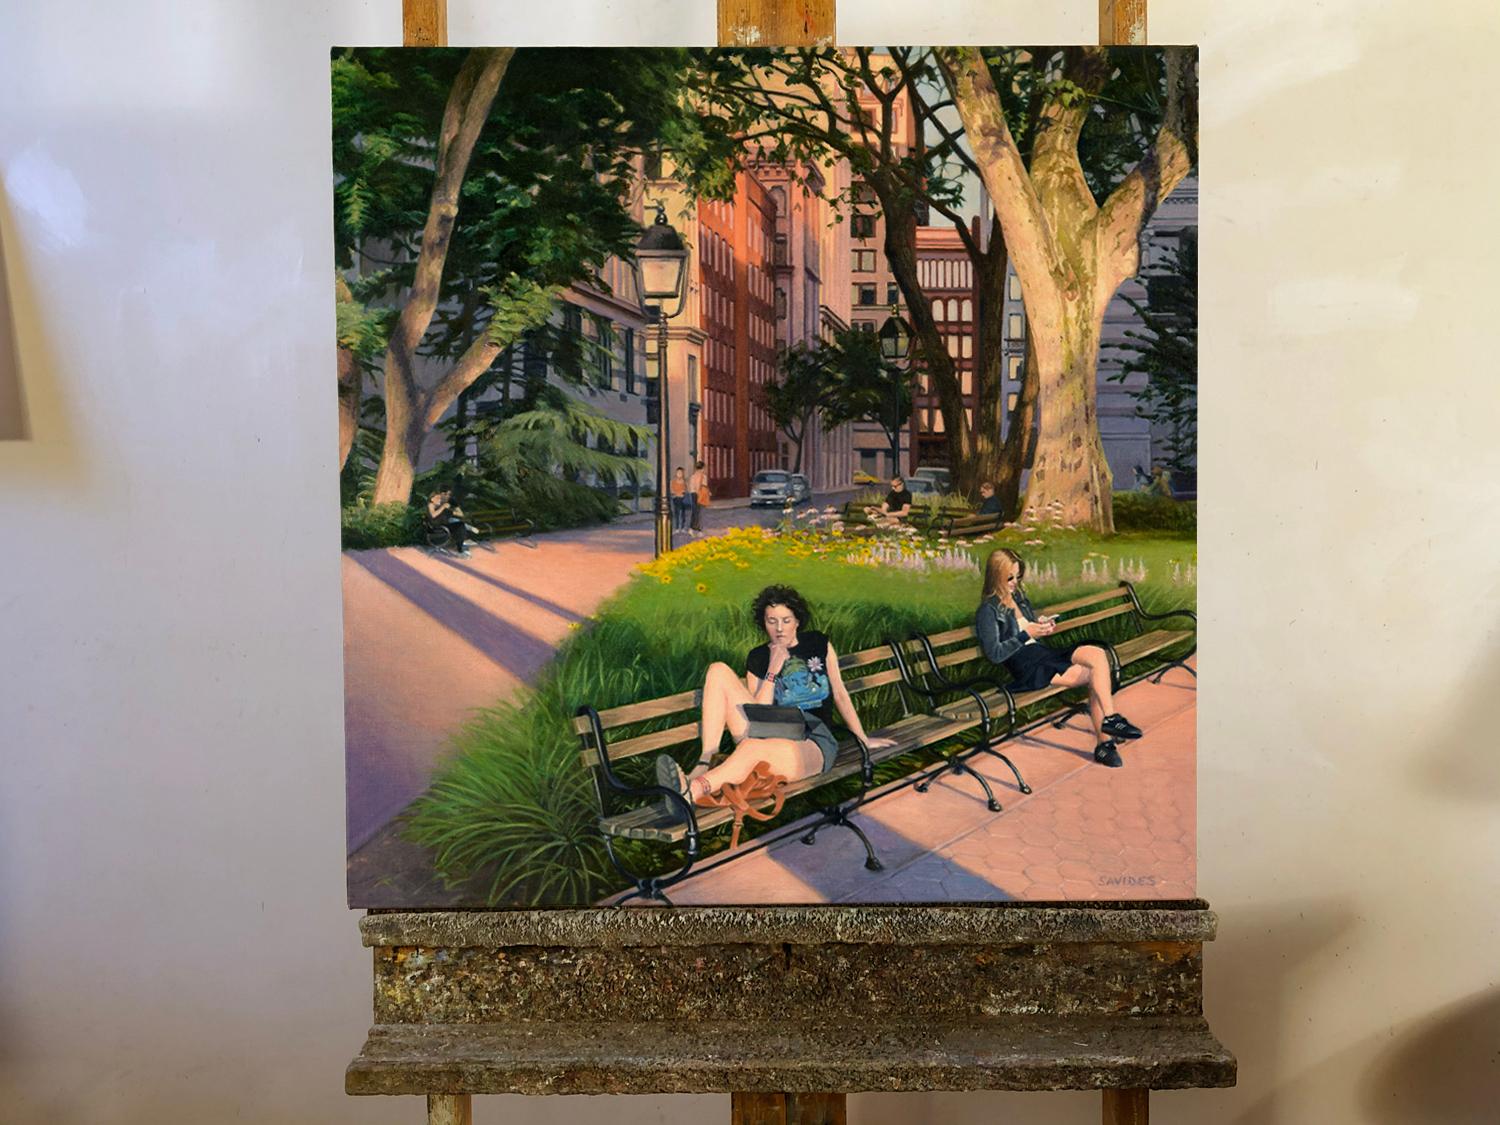 Washington Square Park - Soirée d'été, peinture à l'huile - Réalisme américain Painting par Nick Savides